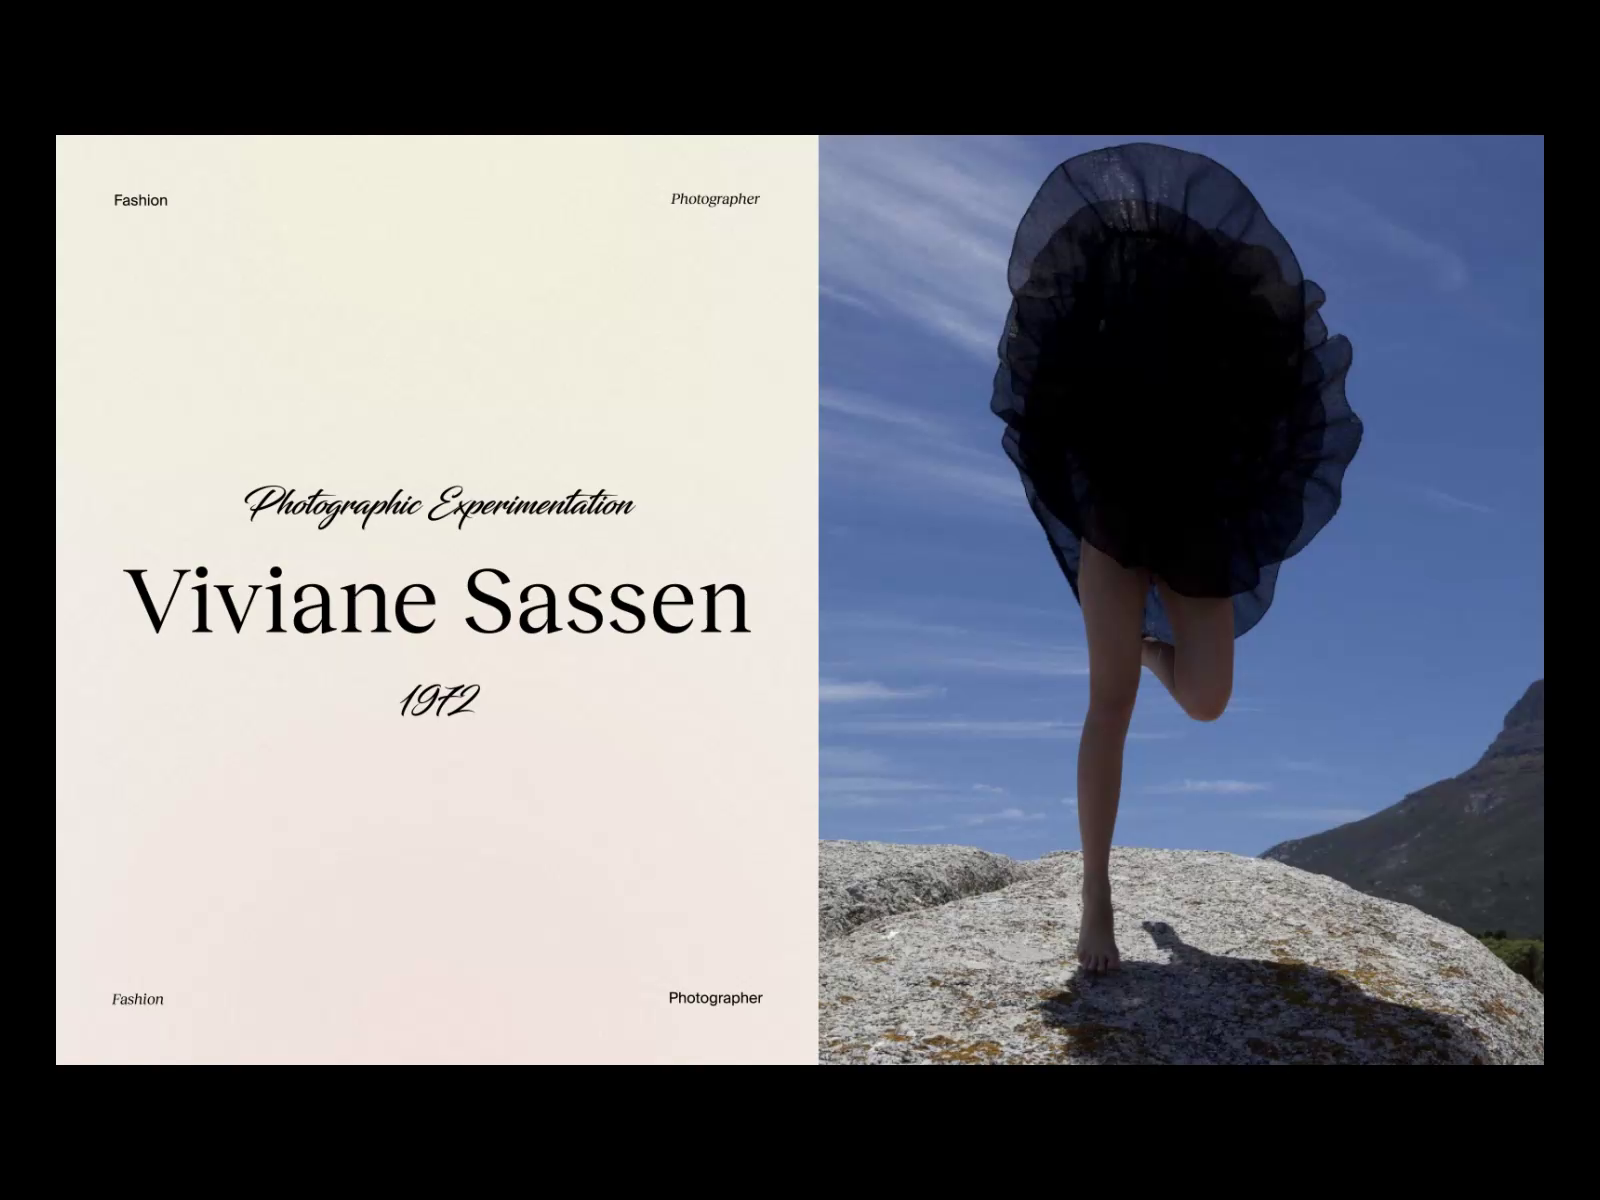 Viviane Sassen by Alex Tkachev on Dribbble